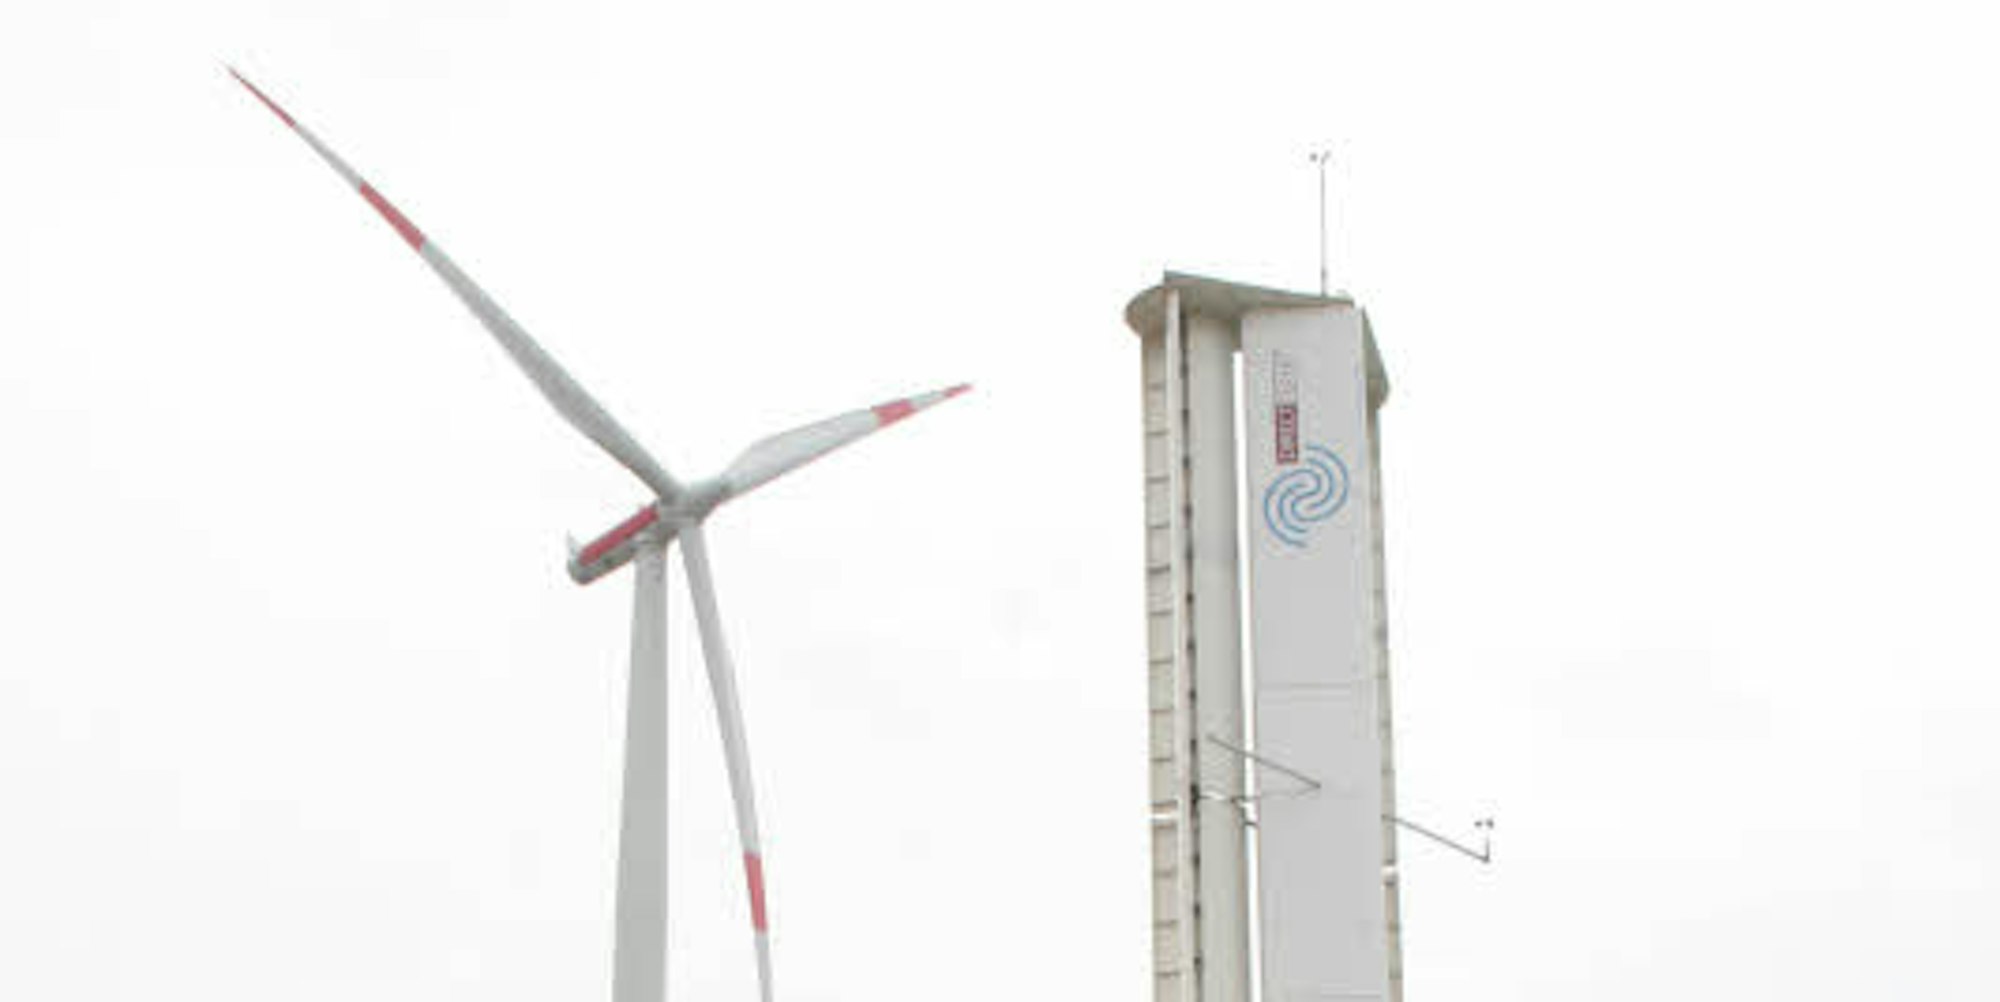 Gerade einmal 20 Meter hoch ist die Windenergieanlage, die ohne Flügel auskommt. Da sie kaum Geräusche erzeugt, kann sie auch in der Nähe von Häusern aufgebaut werden.